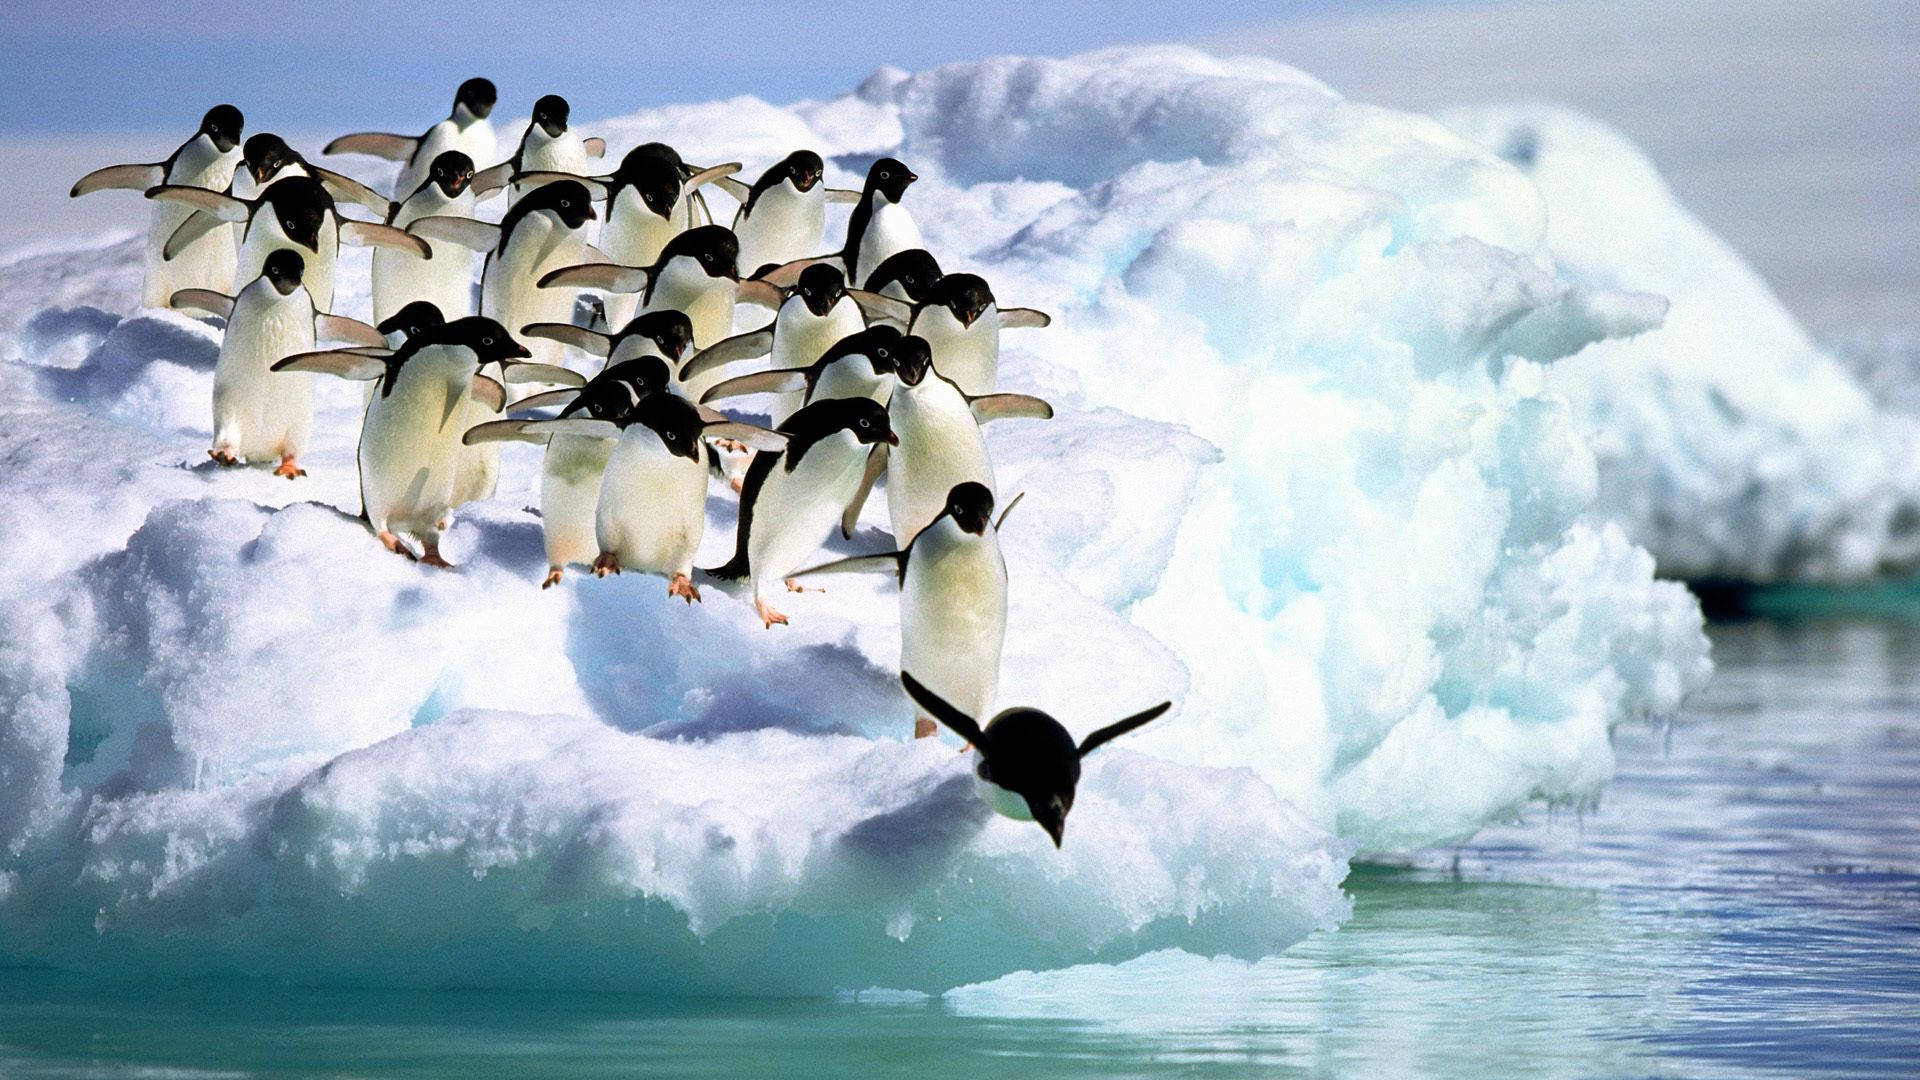 Penguins On Iceberg Wallpaper